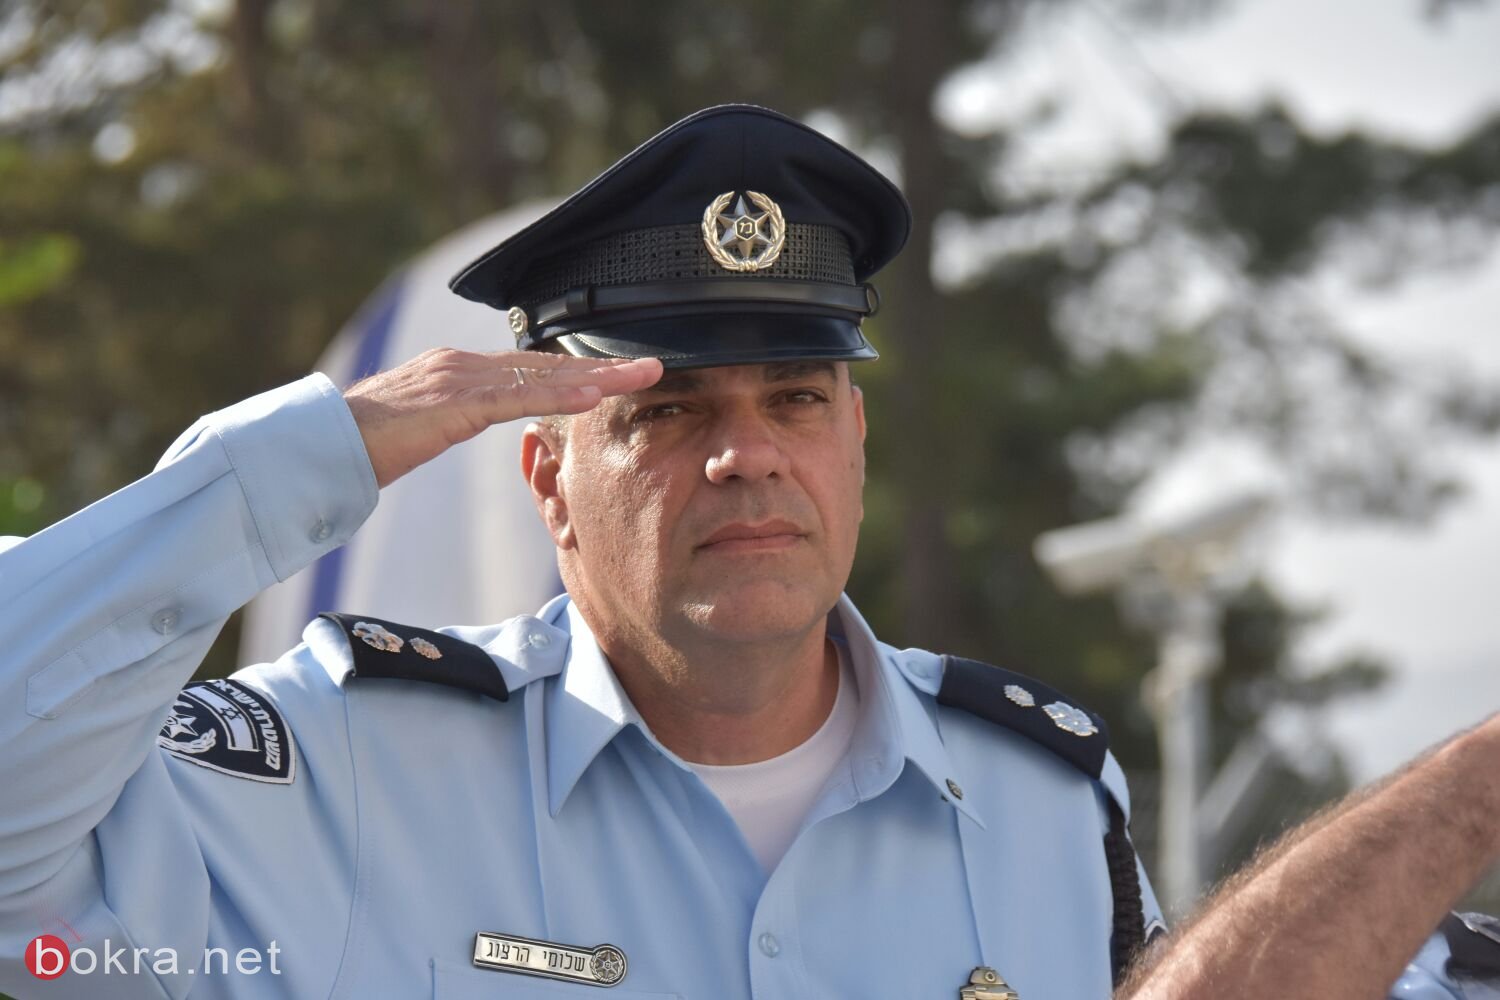 تعيين لطفي فلاح قائد شرطة بيت شان واياد فرج قائد شرطة كريات شمونة-4